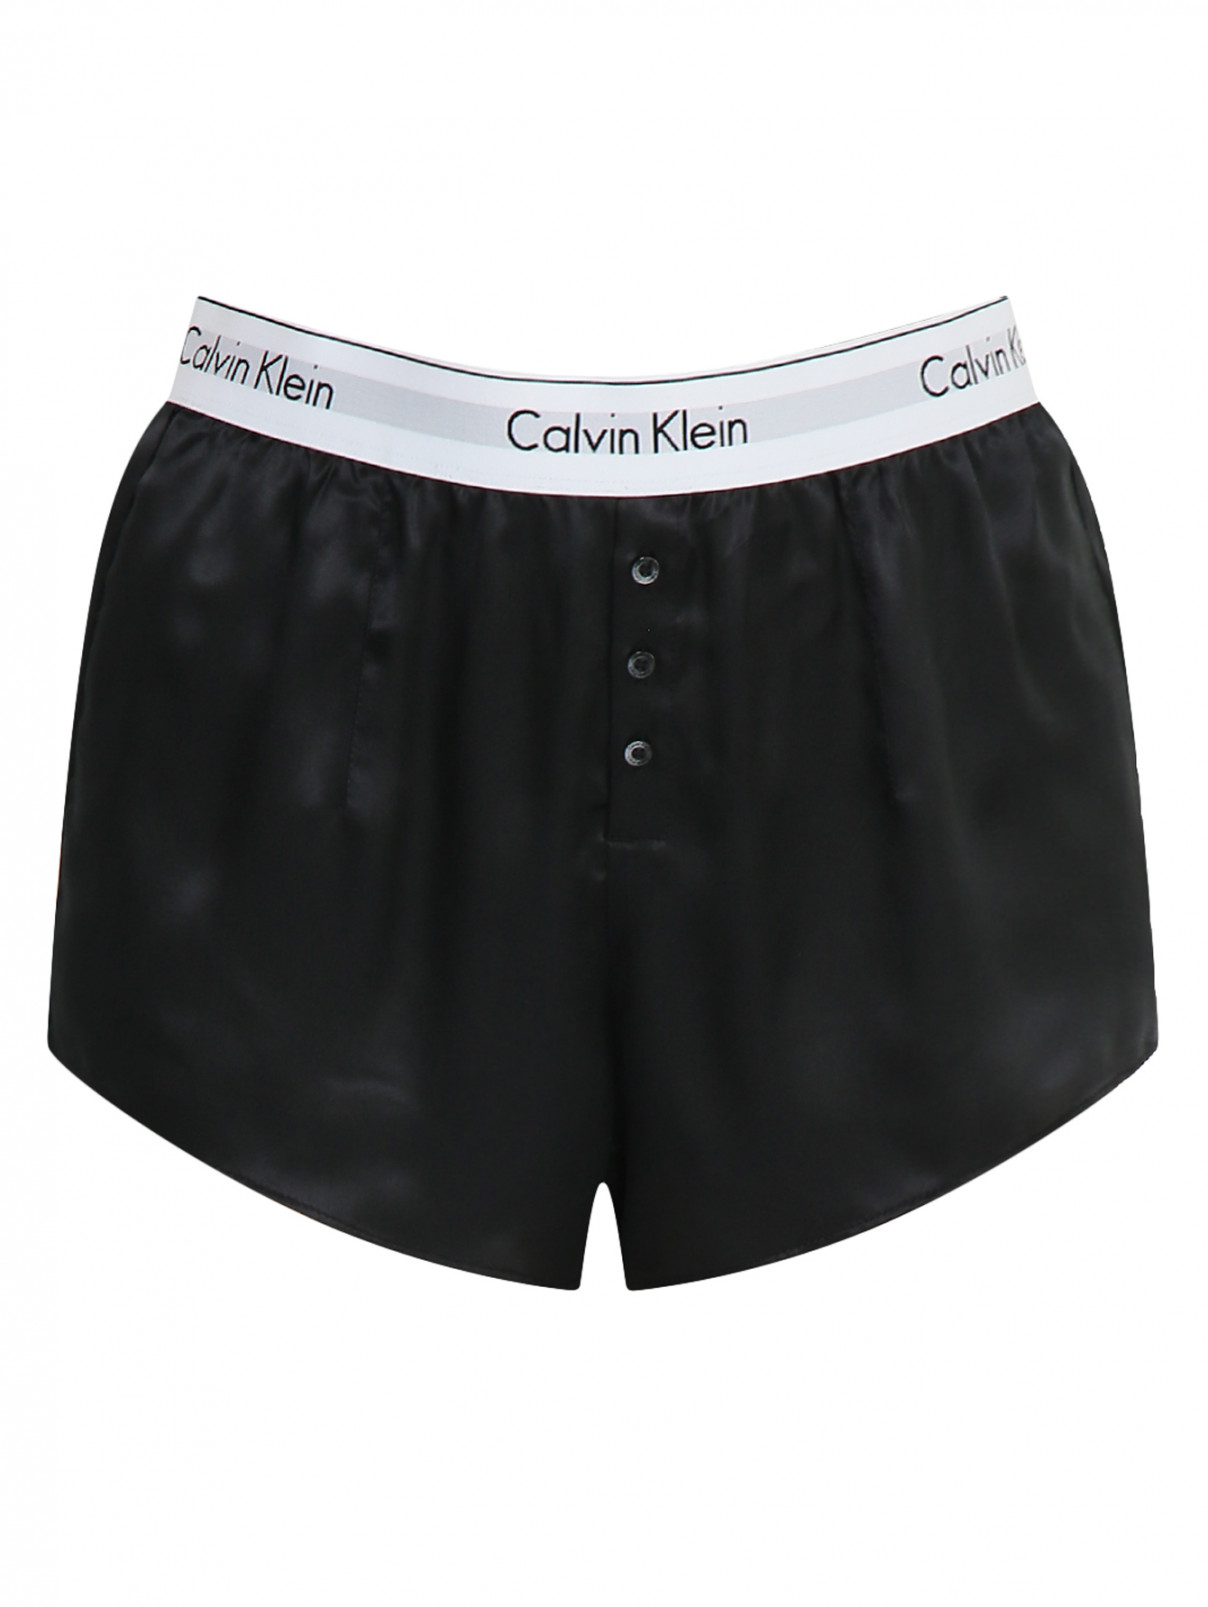 Шорты из шелка с контрастной резинкой Calvin Klein  –  Общий вид  – Цвет:  Черный